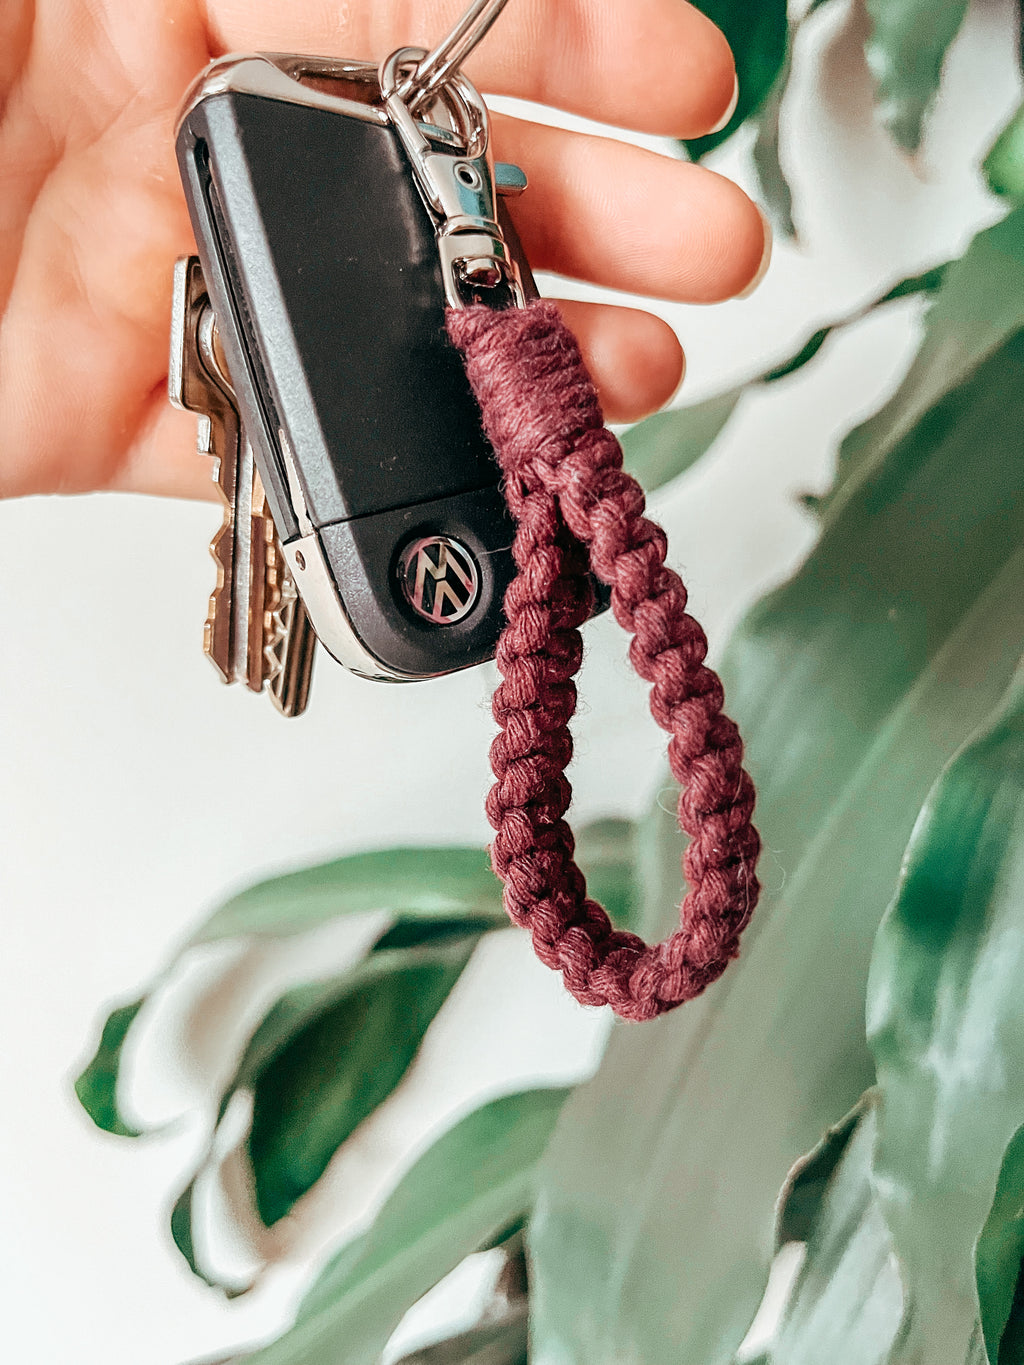 RE porte-clés hibou volcanik porte-clé de voiture pendentif cadeau